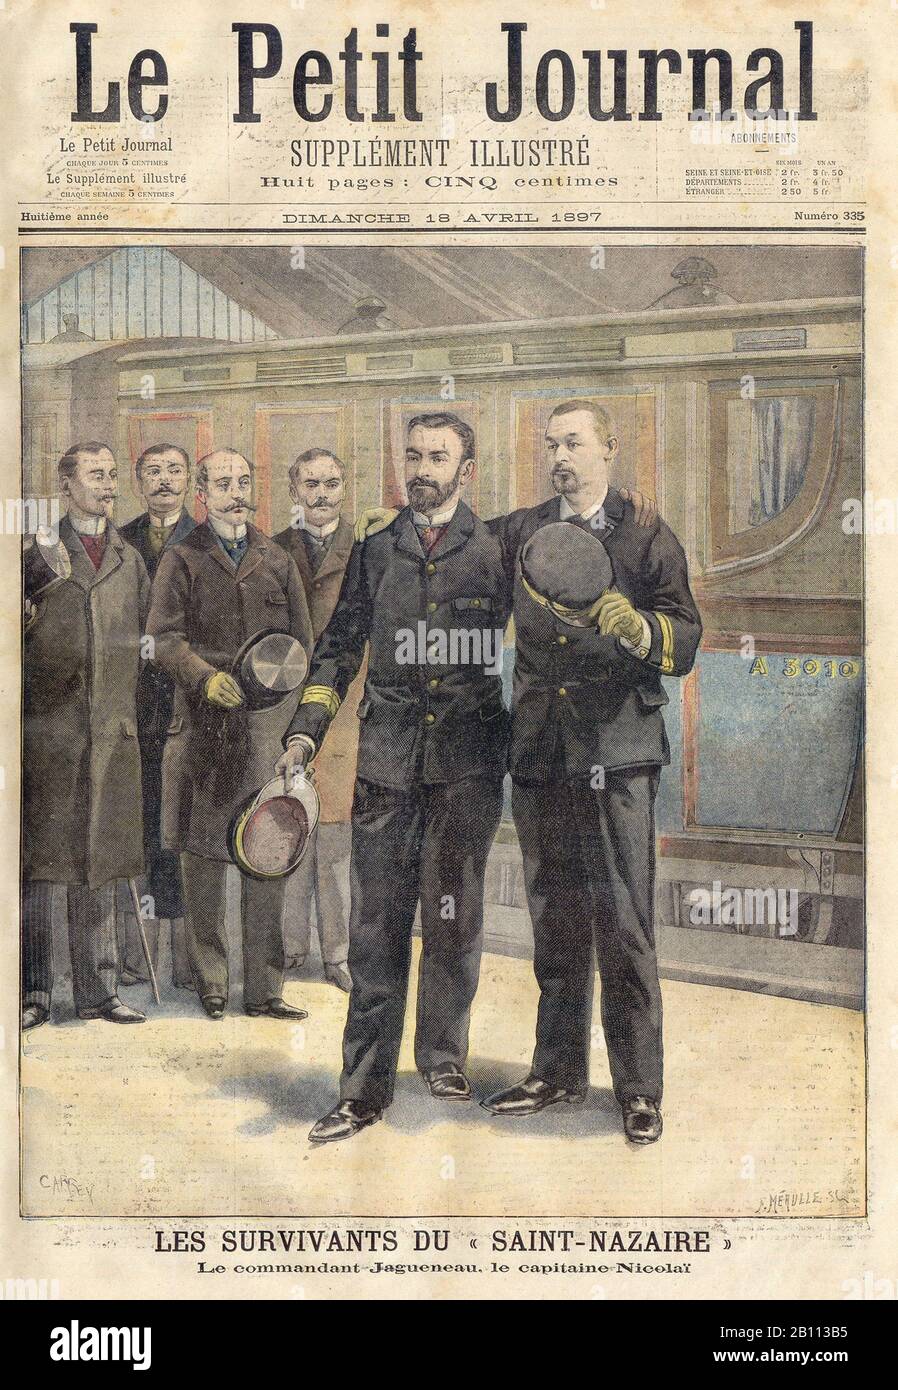 Les SURVIVANTS DU « SAINT-NAZAIRE - I SUPERSTITI della 'SAINT-NAZAIRE - In 'le Petit Journal' French Illustrated Newspaper - 1897 Foto Stock